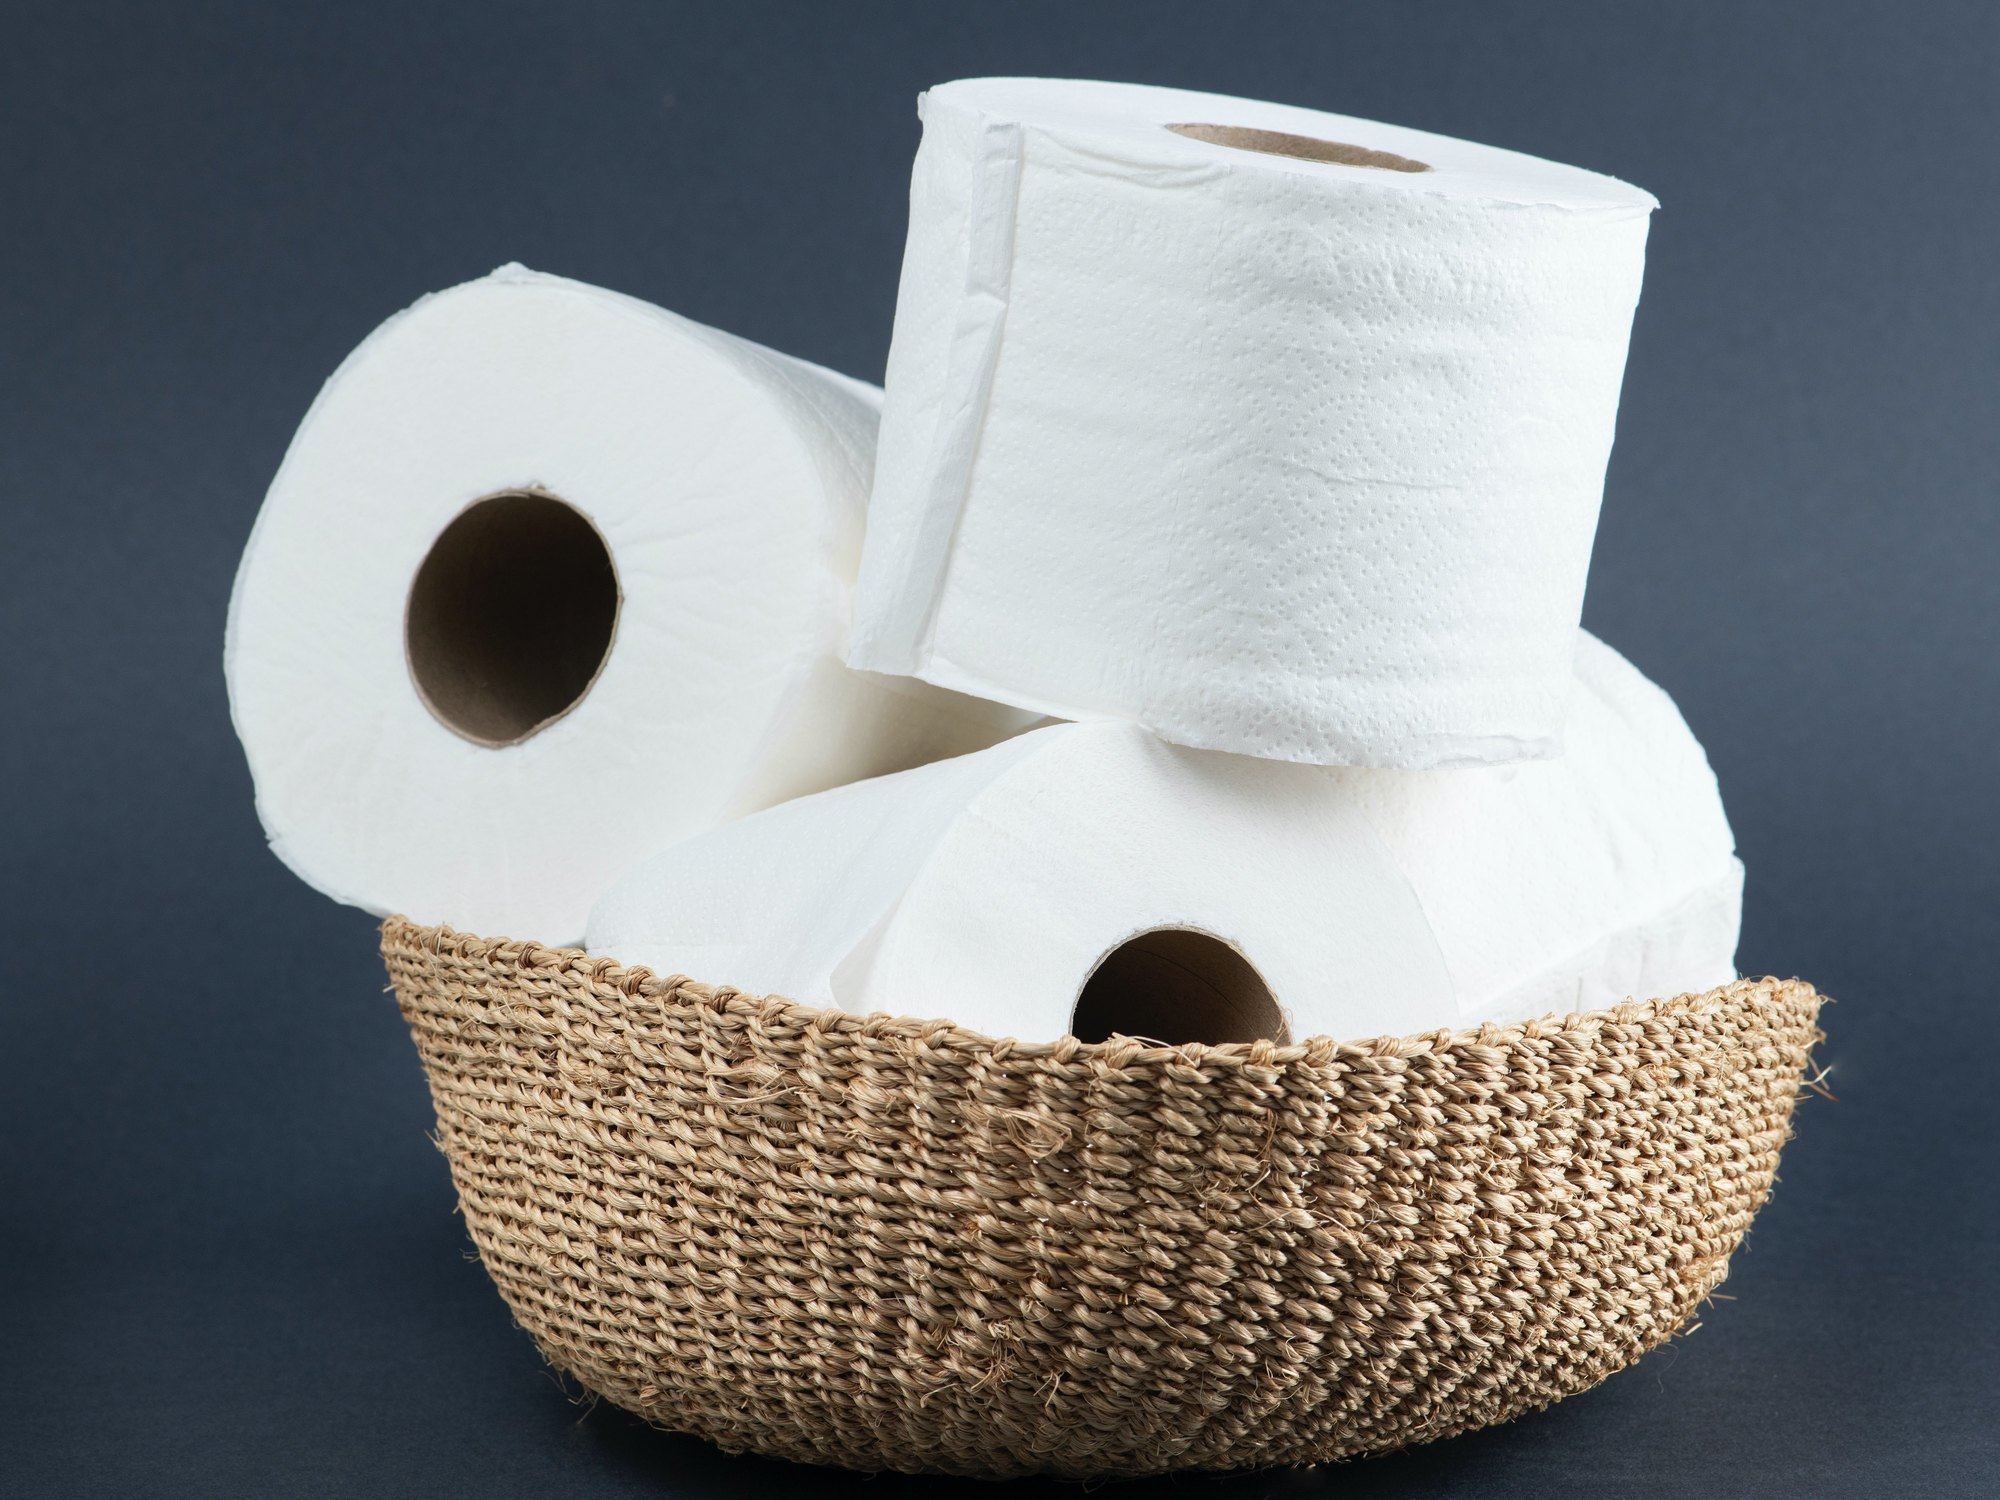 Los 12 rollos papel higiénico más baratos del supermercado, según la OCU - Los Replicantes